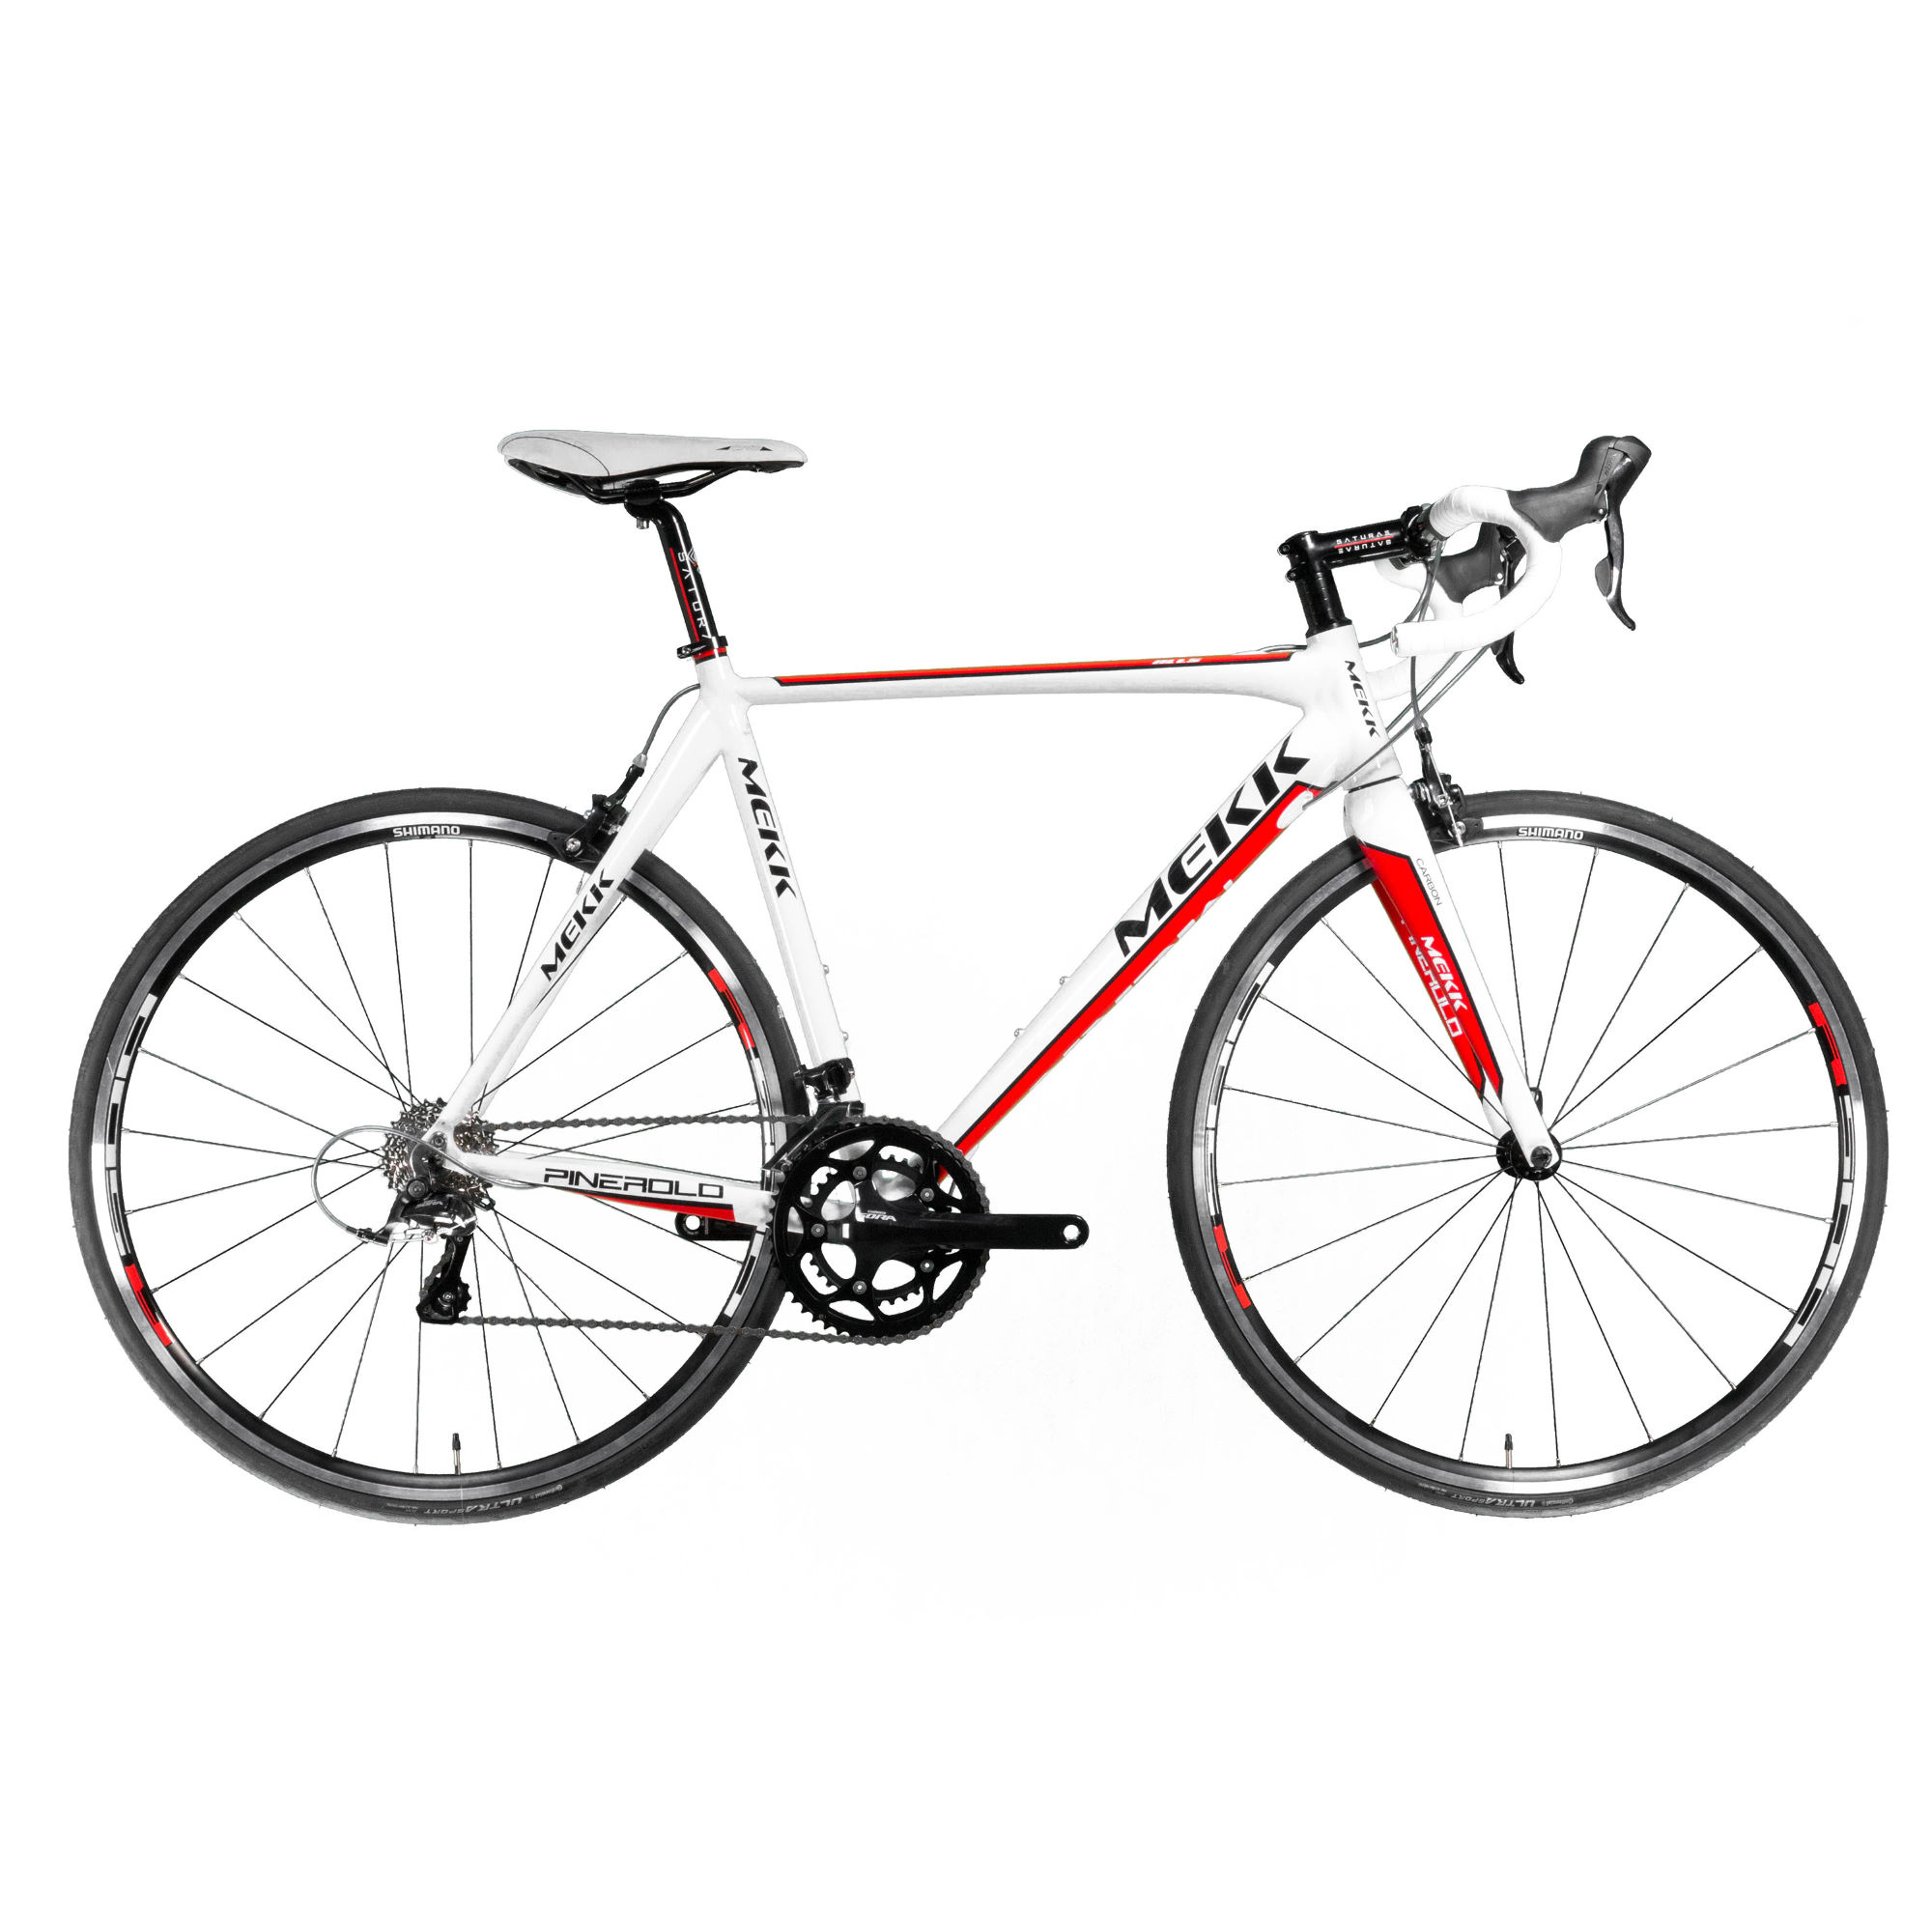 Mekk-Pinerolo-AL-1-5-2015-Road-Bikes-Red-0